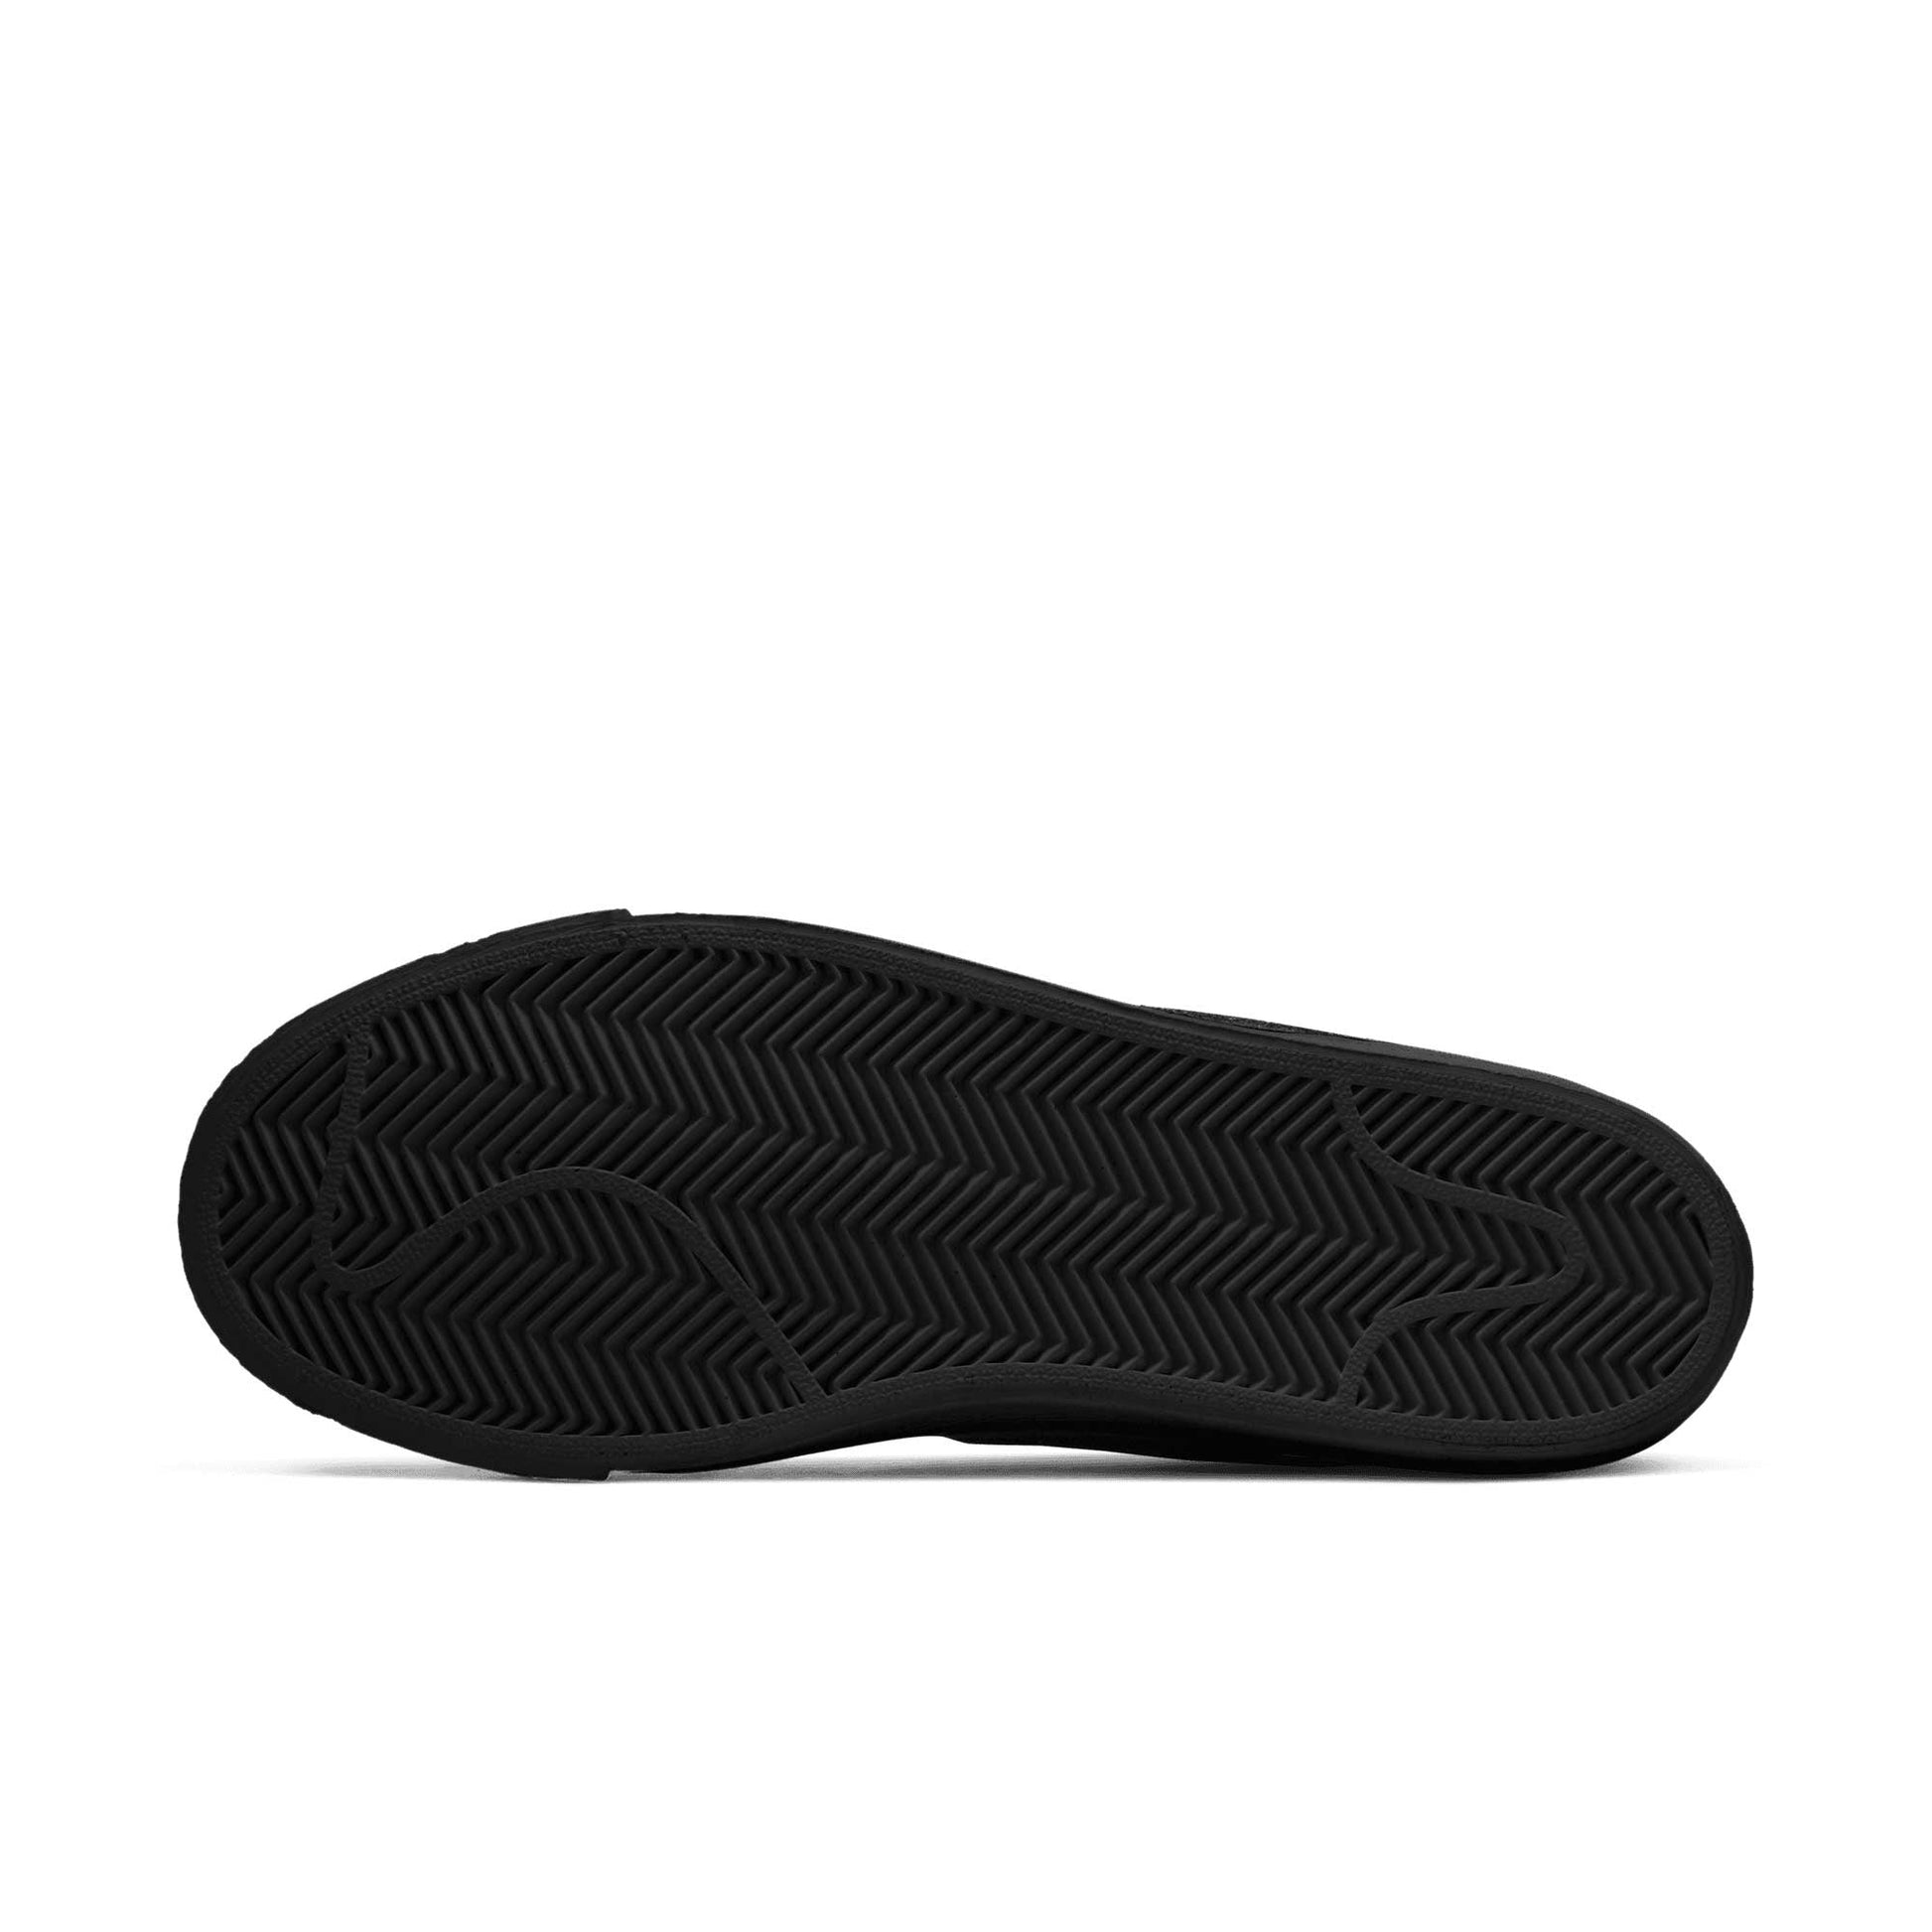 Nike SB Zoom Blazer Mid, black/white-black-black - Tiki Room Skateboards - 5